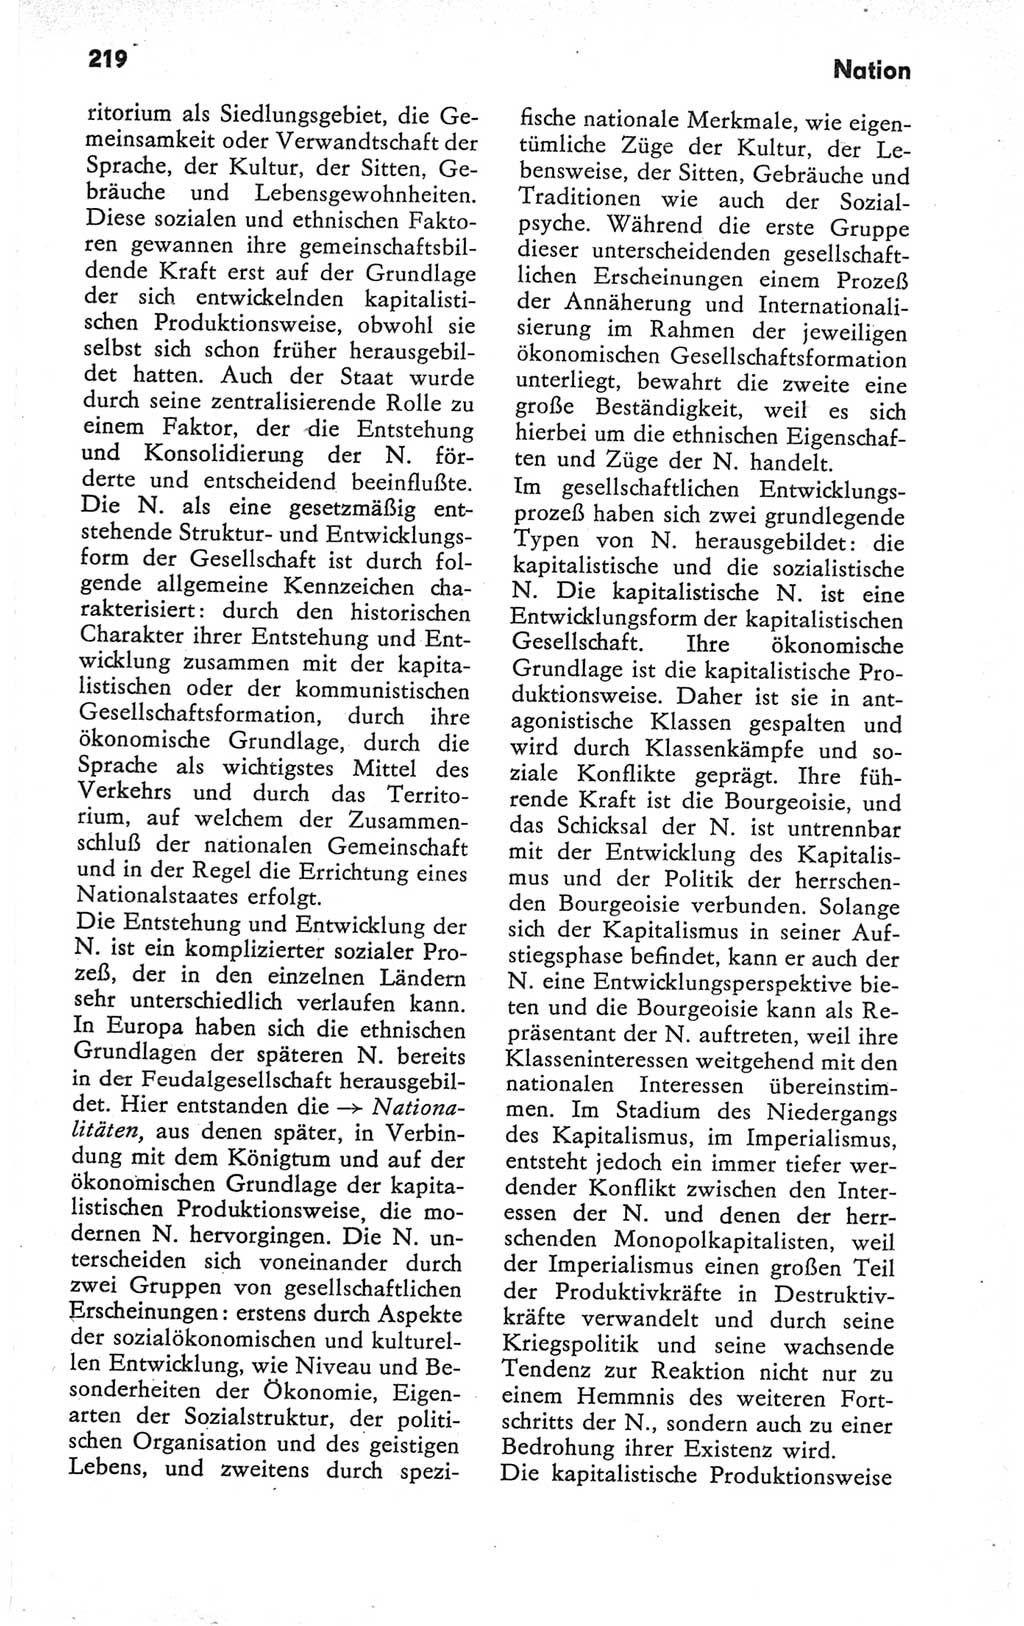 Kleines Wörterbuch der marxistisch-leninistischen Philosophie [Deutsche Demokratische Republik (DDR)] 1979, Seite 219 (Kl. Wb. ML Phil. DDR 1979, S. 219)